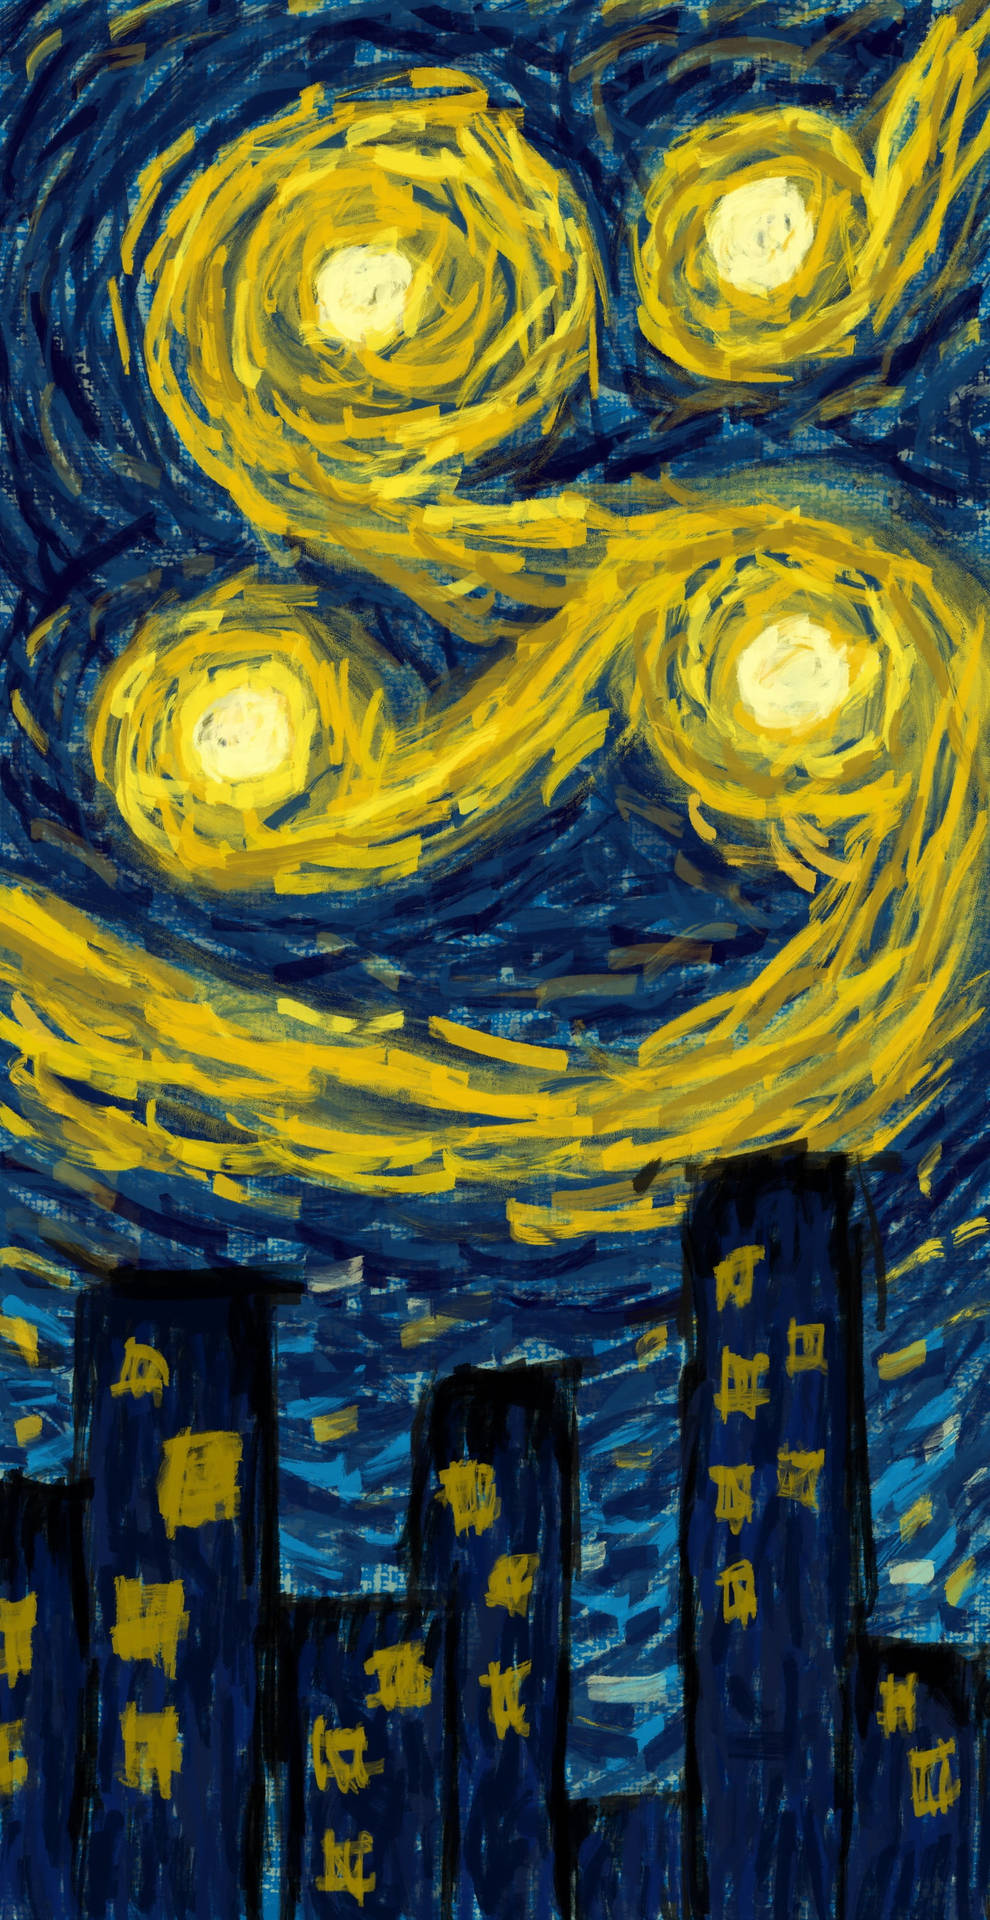 Tải ngay hình nền Impressionist Vertical Van Gogh Starry Night để tha hồ thưởng thức vẻ đẹp của bức tranh nổi tiếng! Thiết kế độc đáo, tinh tế với gam màu sắc thanh thoát chắc chắn sẽ khiến bạn say đắm, bất chấp thời gian trôi qua.